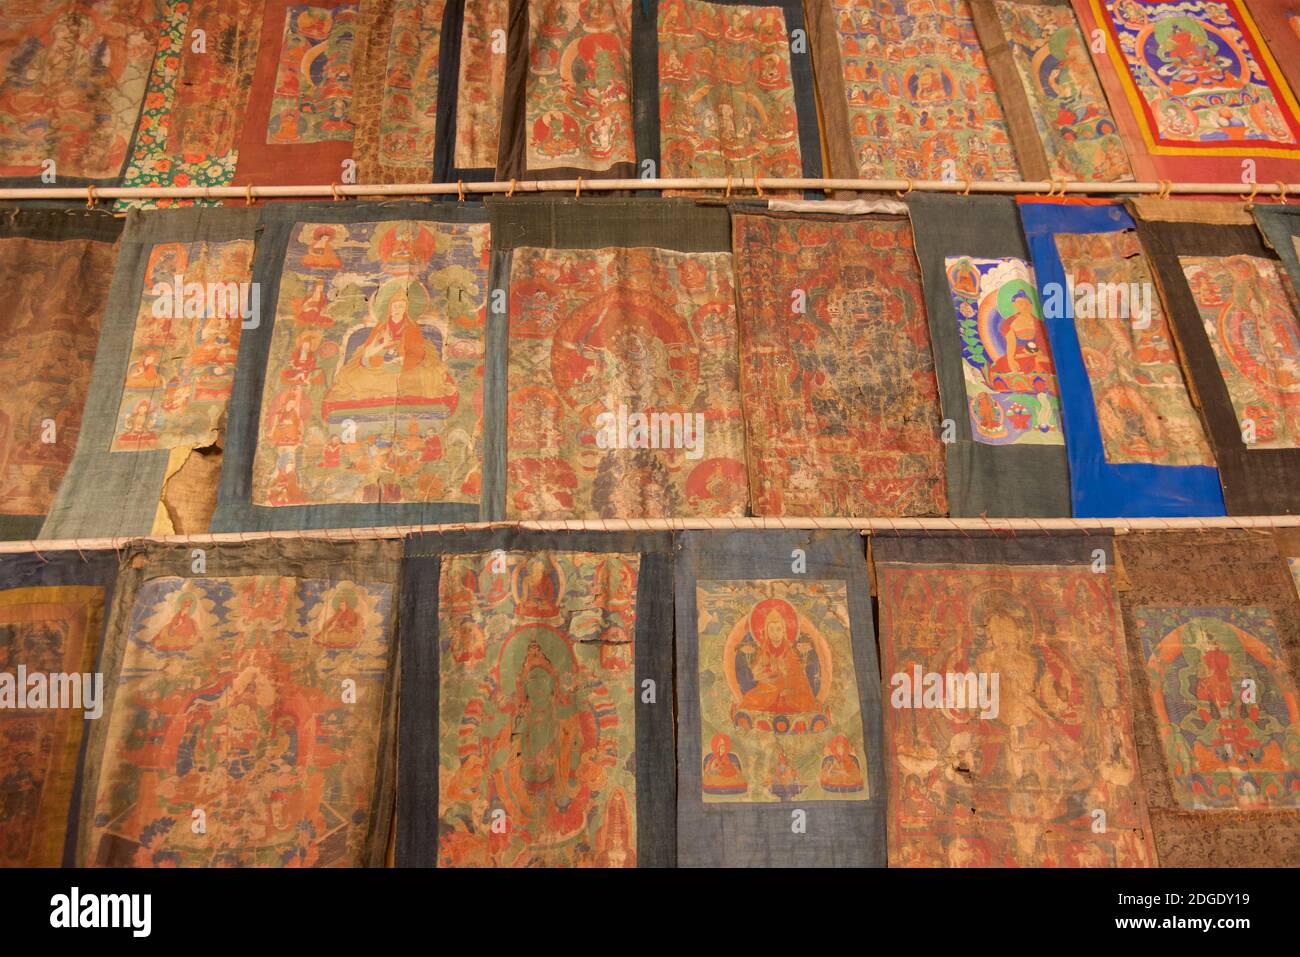 Numerose mandala dipinte e altre immagini buddiste adornano la sala di preghiera del Monastero di Stongdey, Zanskar, Ladakh, India settentrionale, circa 18Êkm a nord di Padum. La gompa è stata fondata nel 1052CE. Foto Stock